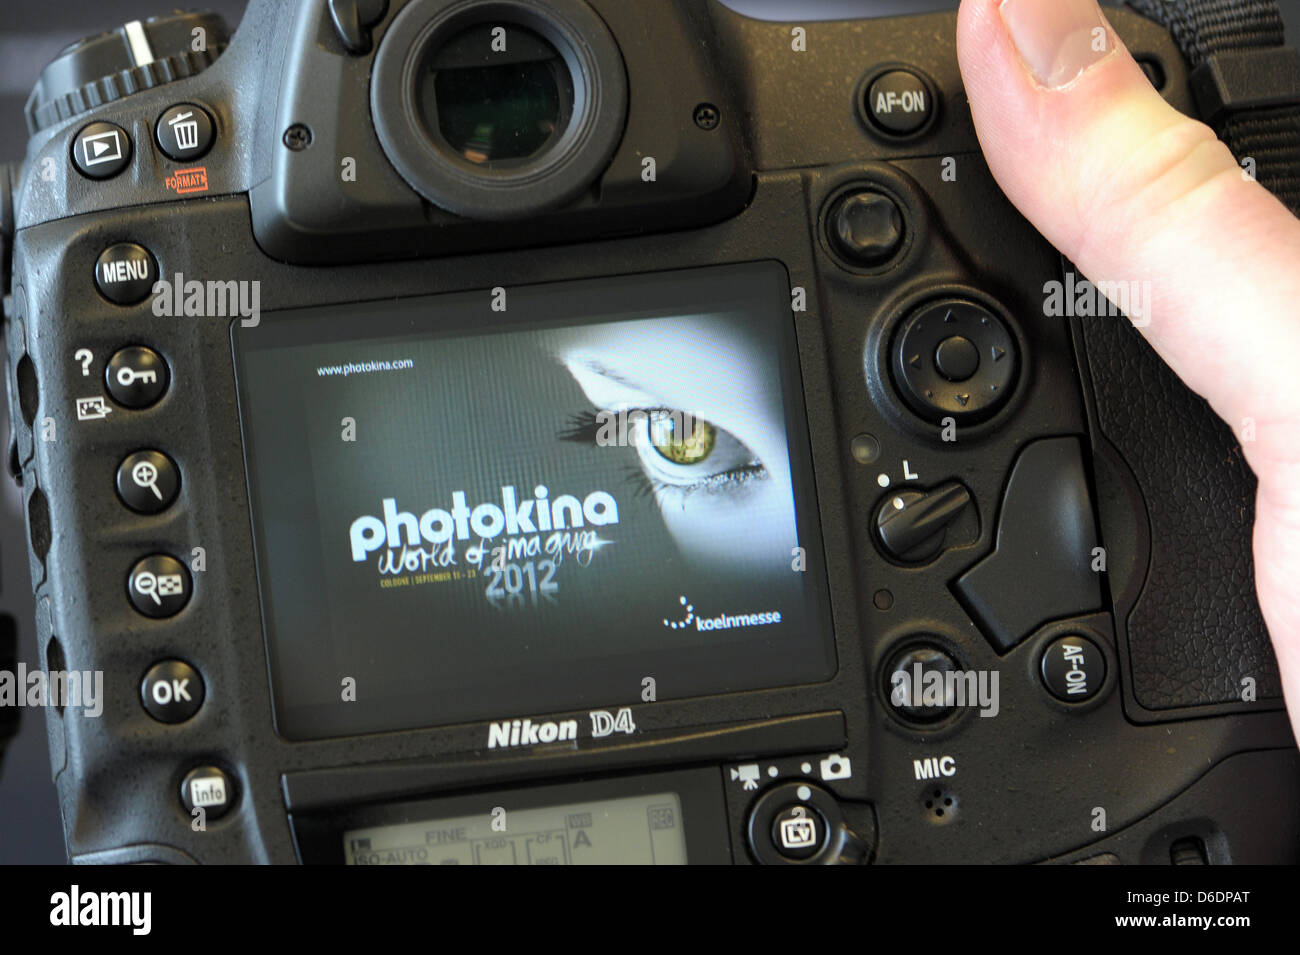 Le logo de la 'photokina 2012' salon s'affiche sur un appareil photo Nikon D4 à Duesseldorf, Allemagne, 10 septembre 2012. Selon les organisateurs, c'est l'imagerie la plus importante du monde juste et cela aura lieu du 18 au 23 septembre 2012 à Cologne. Photo : Federico Gambarini Banque D'Images